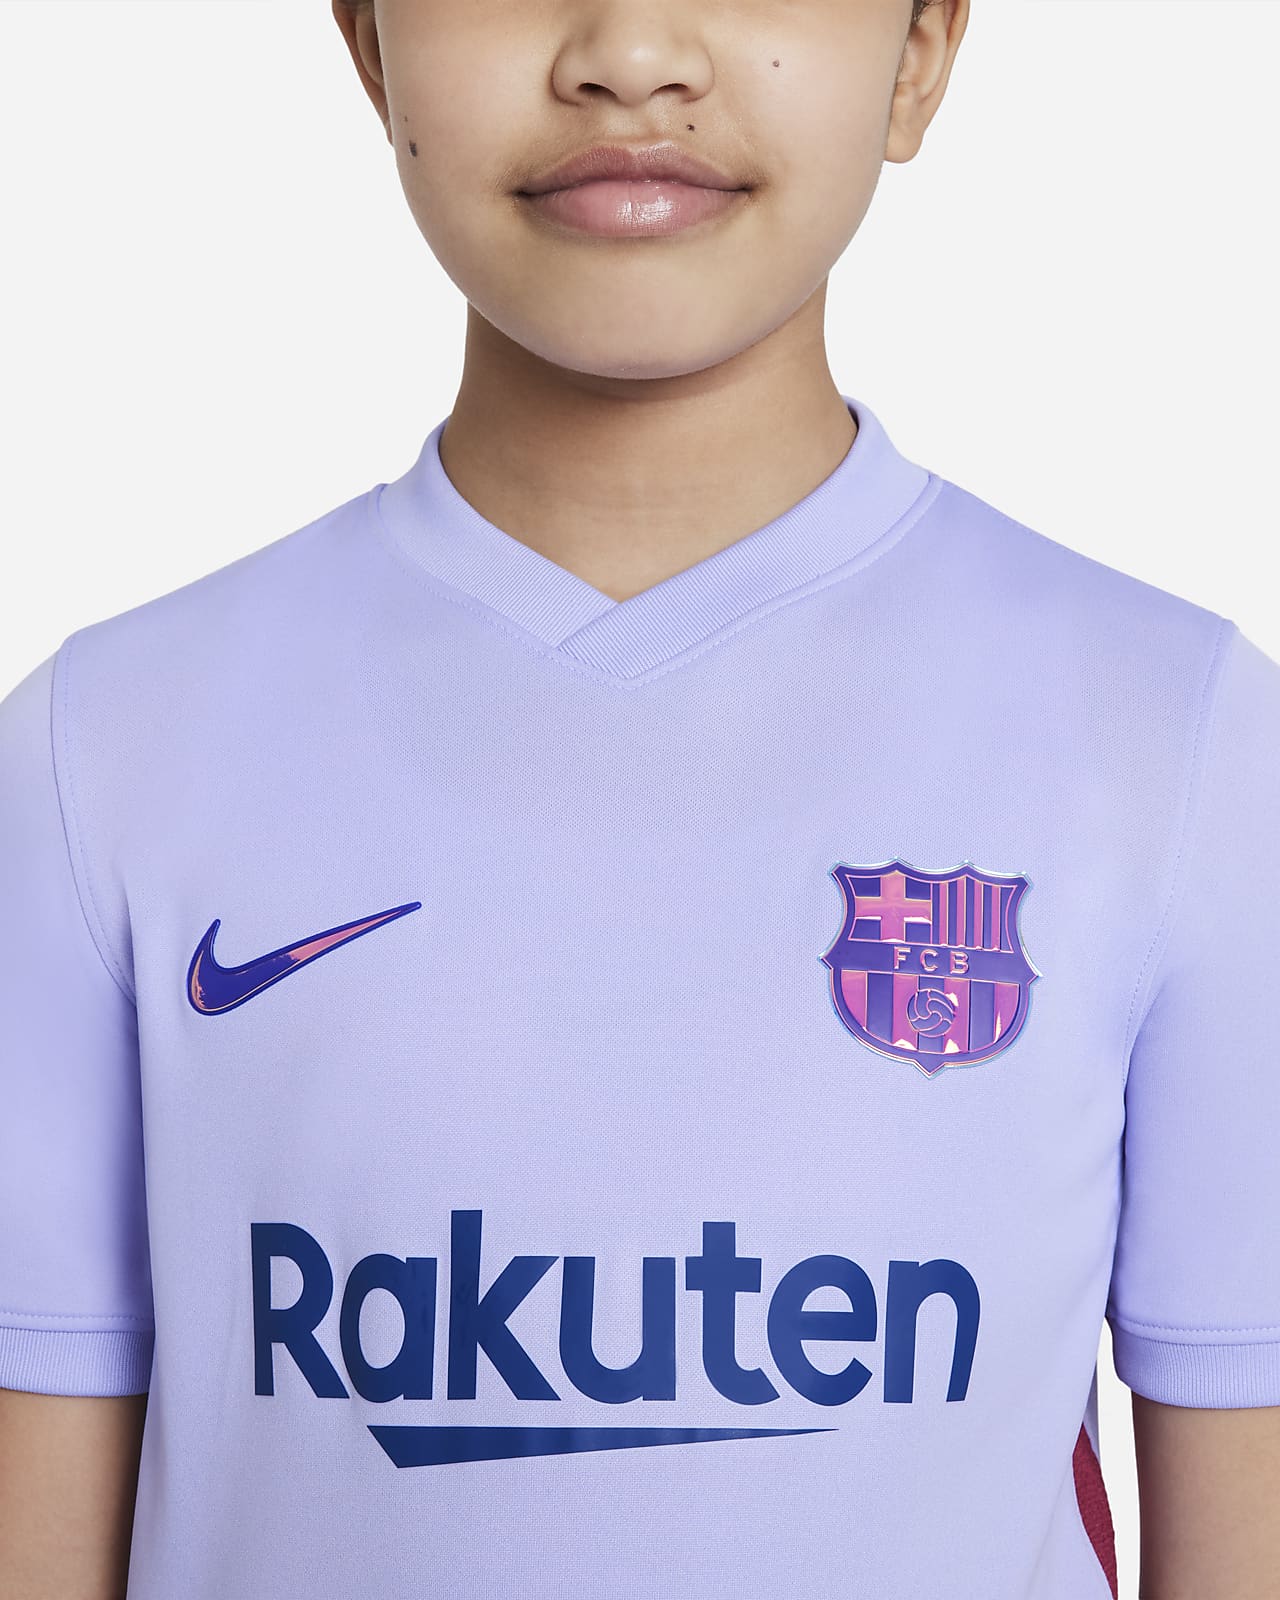 Economisch Veilig spion FC Barcelona 2021/22 Stadium Uit Nike voetbalshirt met Dri-FIT voor kids.  Nike BE